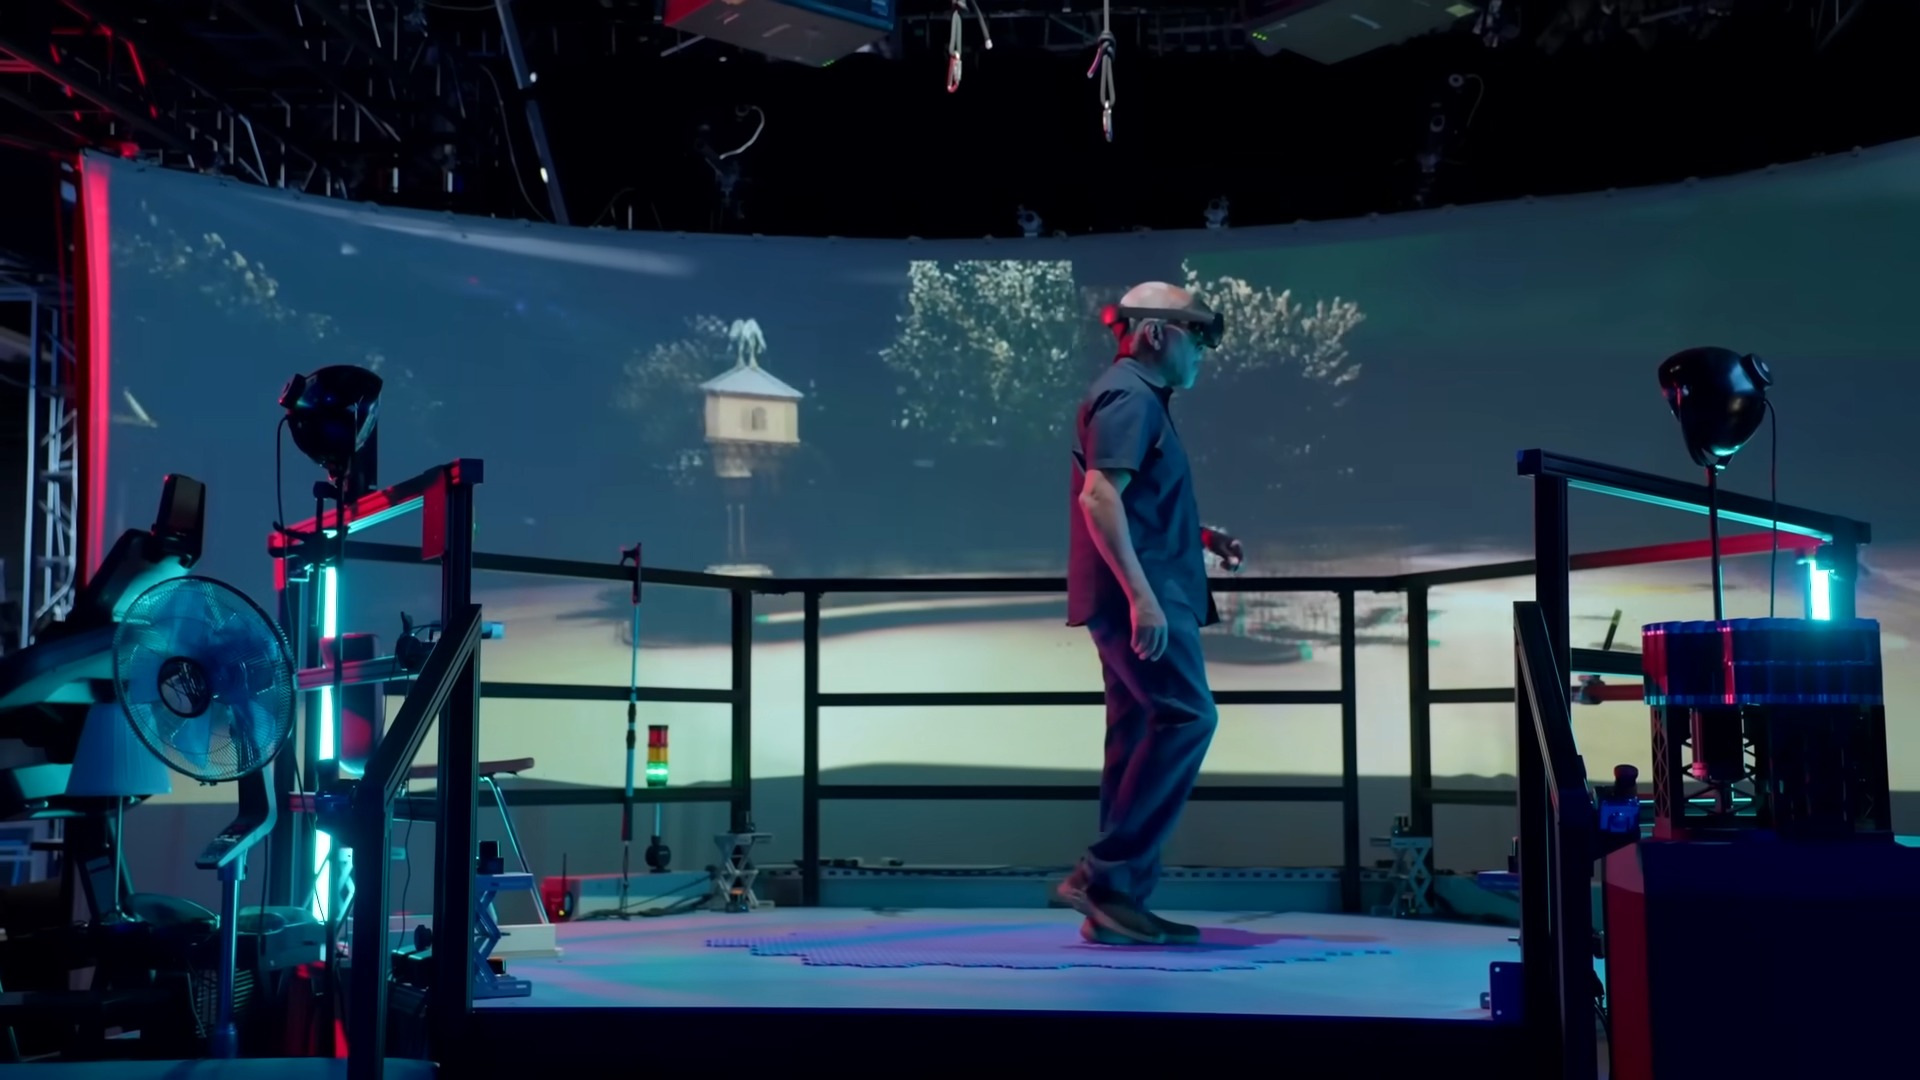 迪士尼新發明 HoloTile 地板，改變 VR 遊戲沉浸感低和空間感受限的問題 - 電腦王阿達